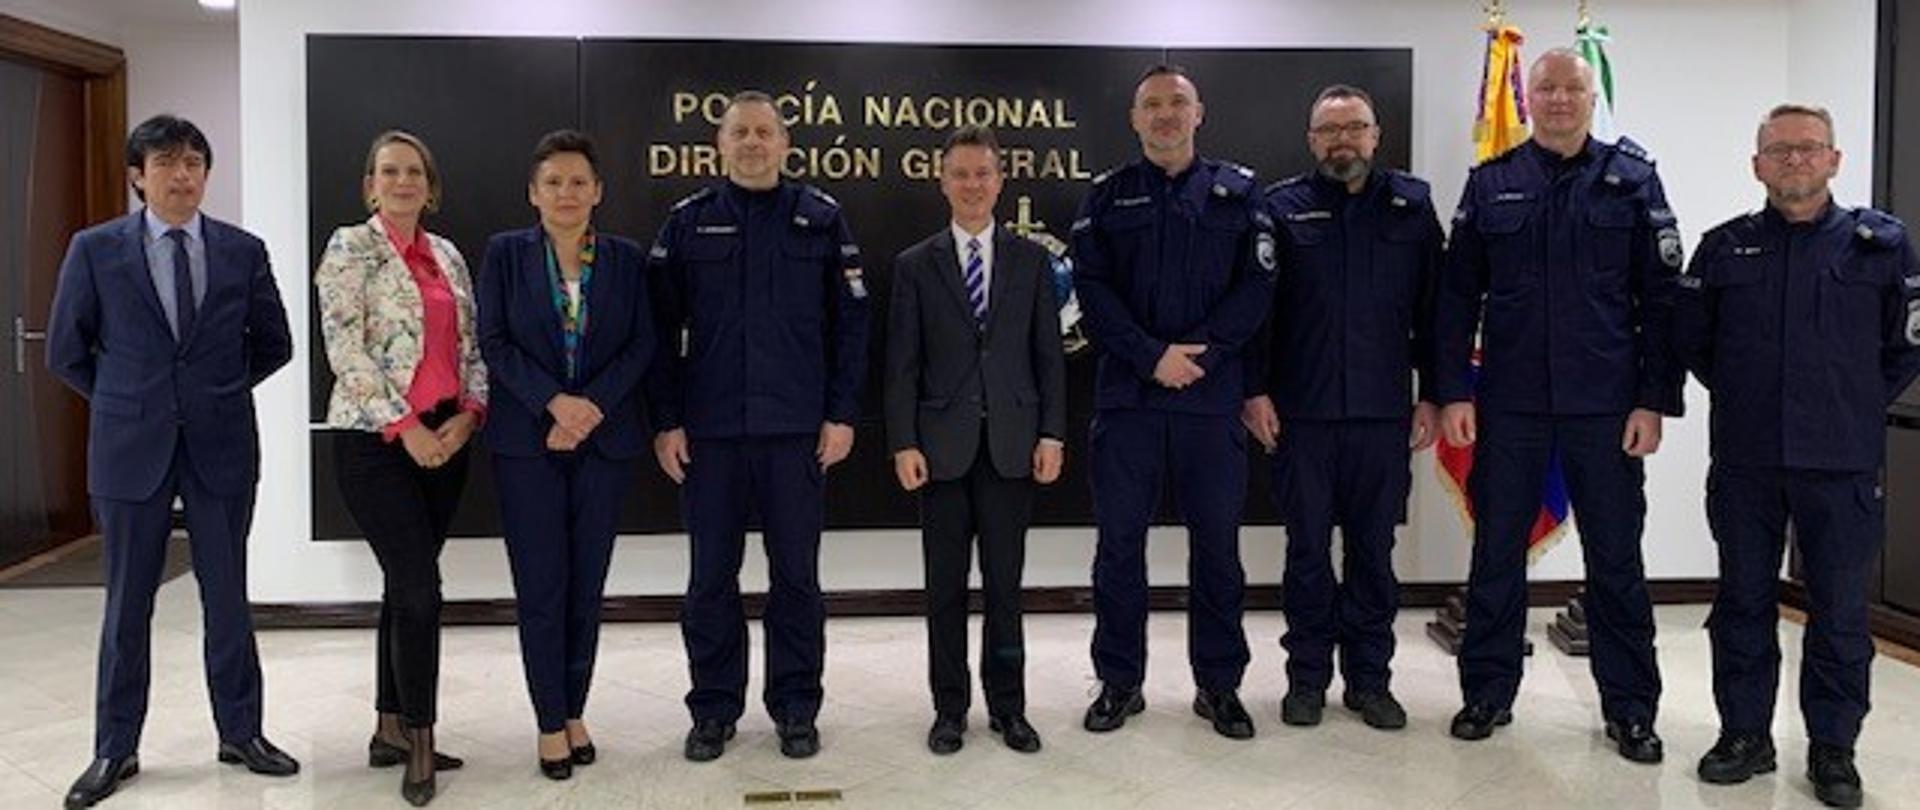 Delegación de la Policía de Polonia de visita en Colombia - febrero 2023